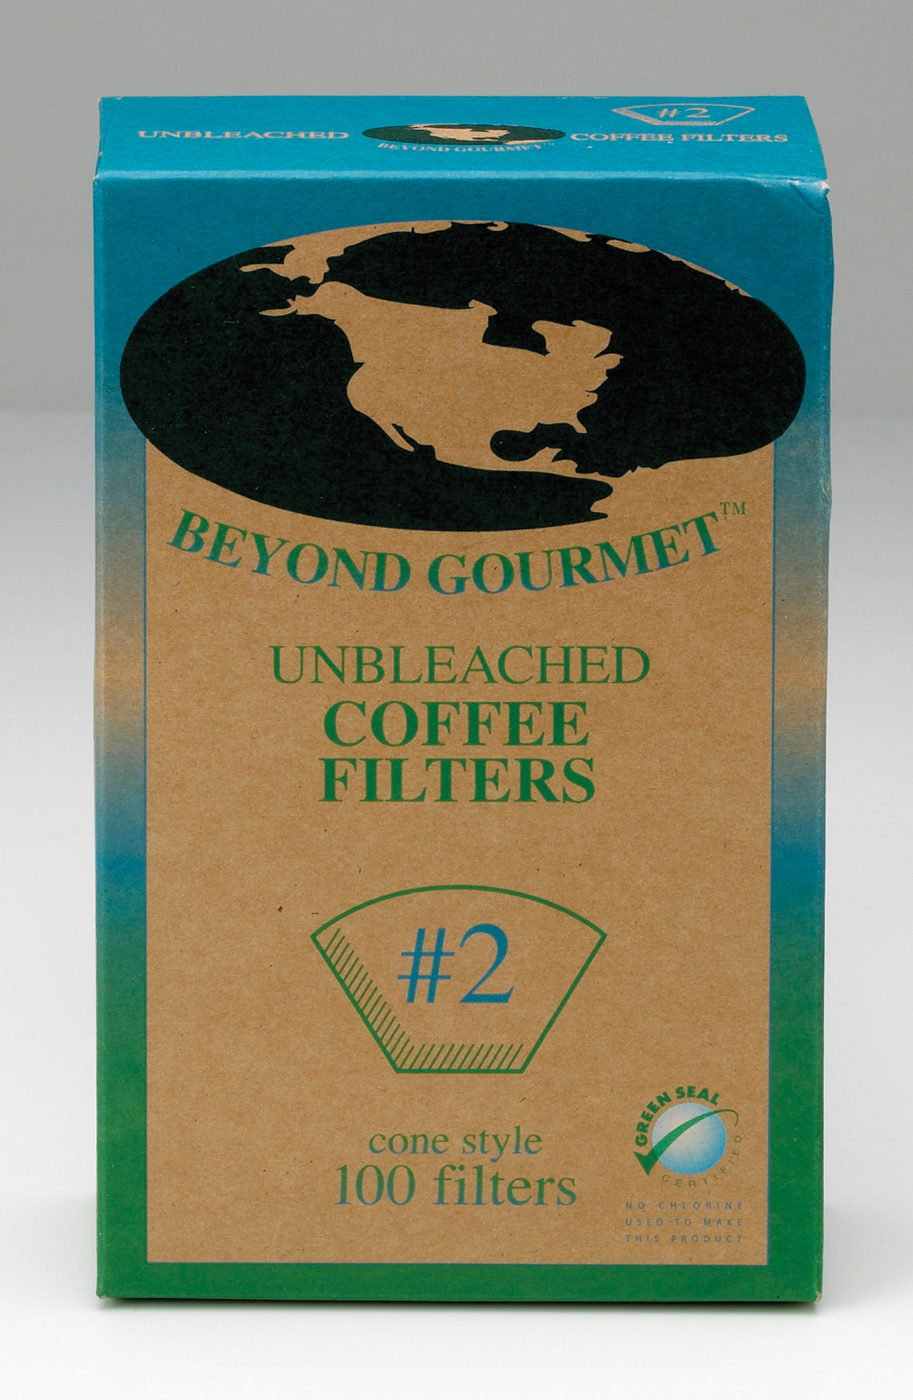 Beyond Gourmet #2 Coffee Filters